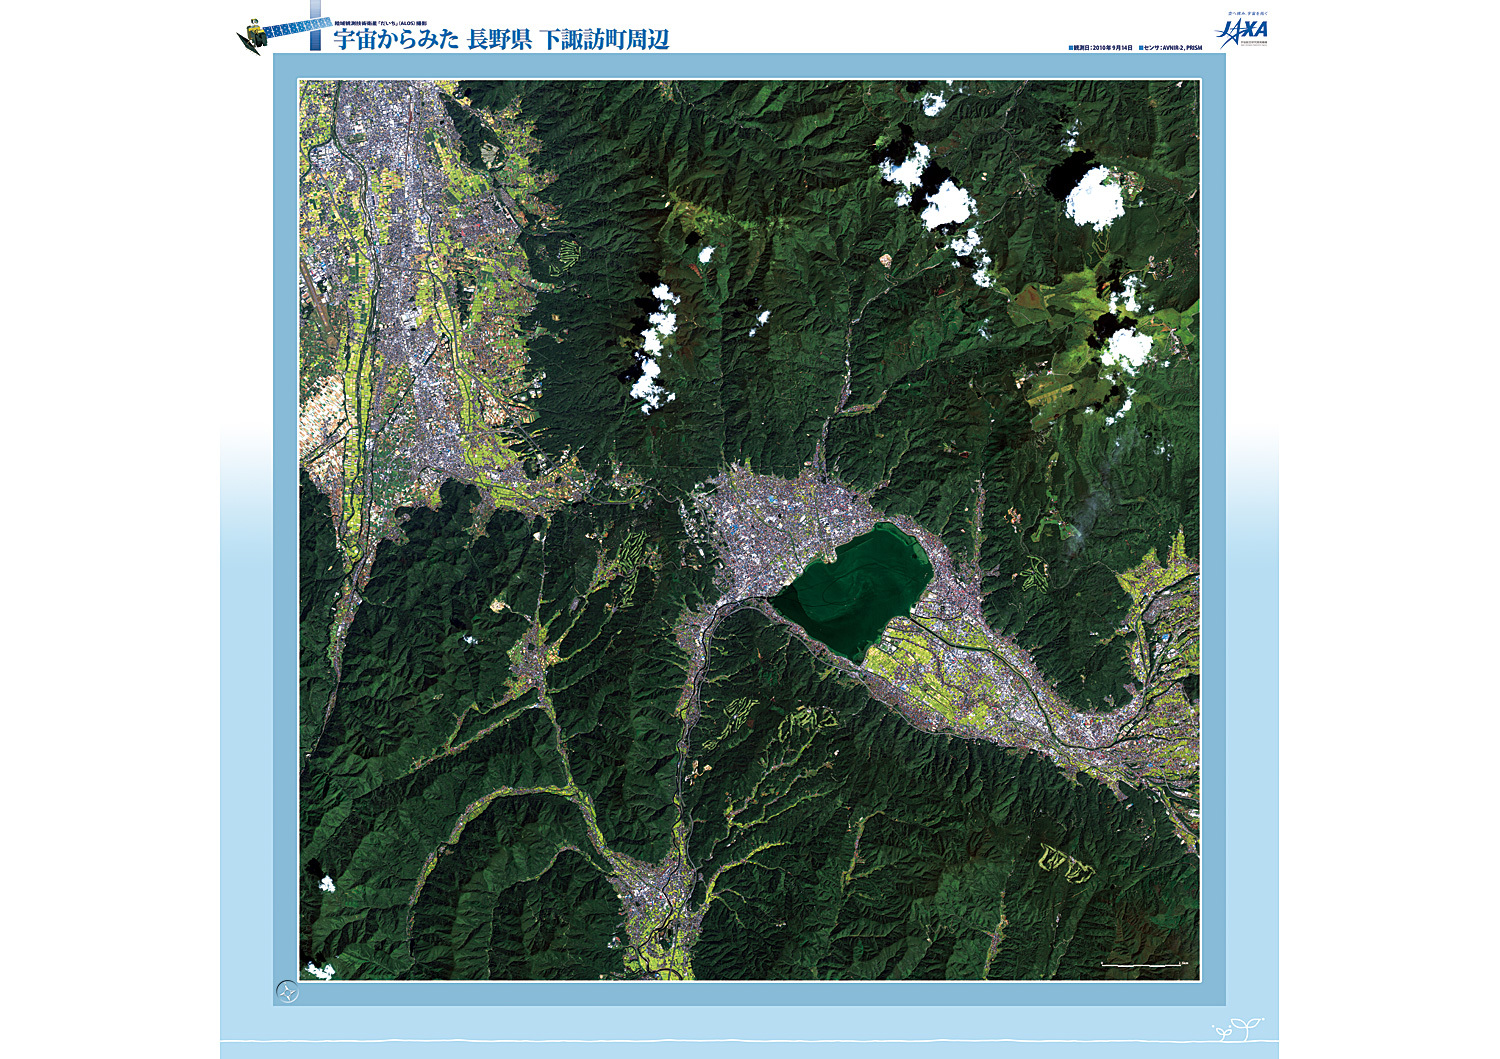 だいちから見た日本の都市 下諏訪町:衛星画像（ポスター仕上げ）